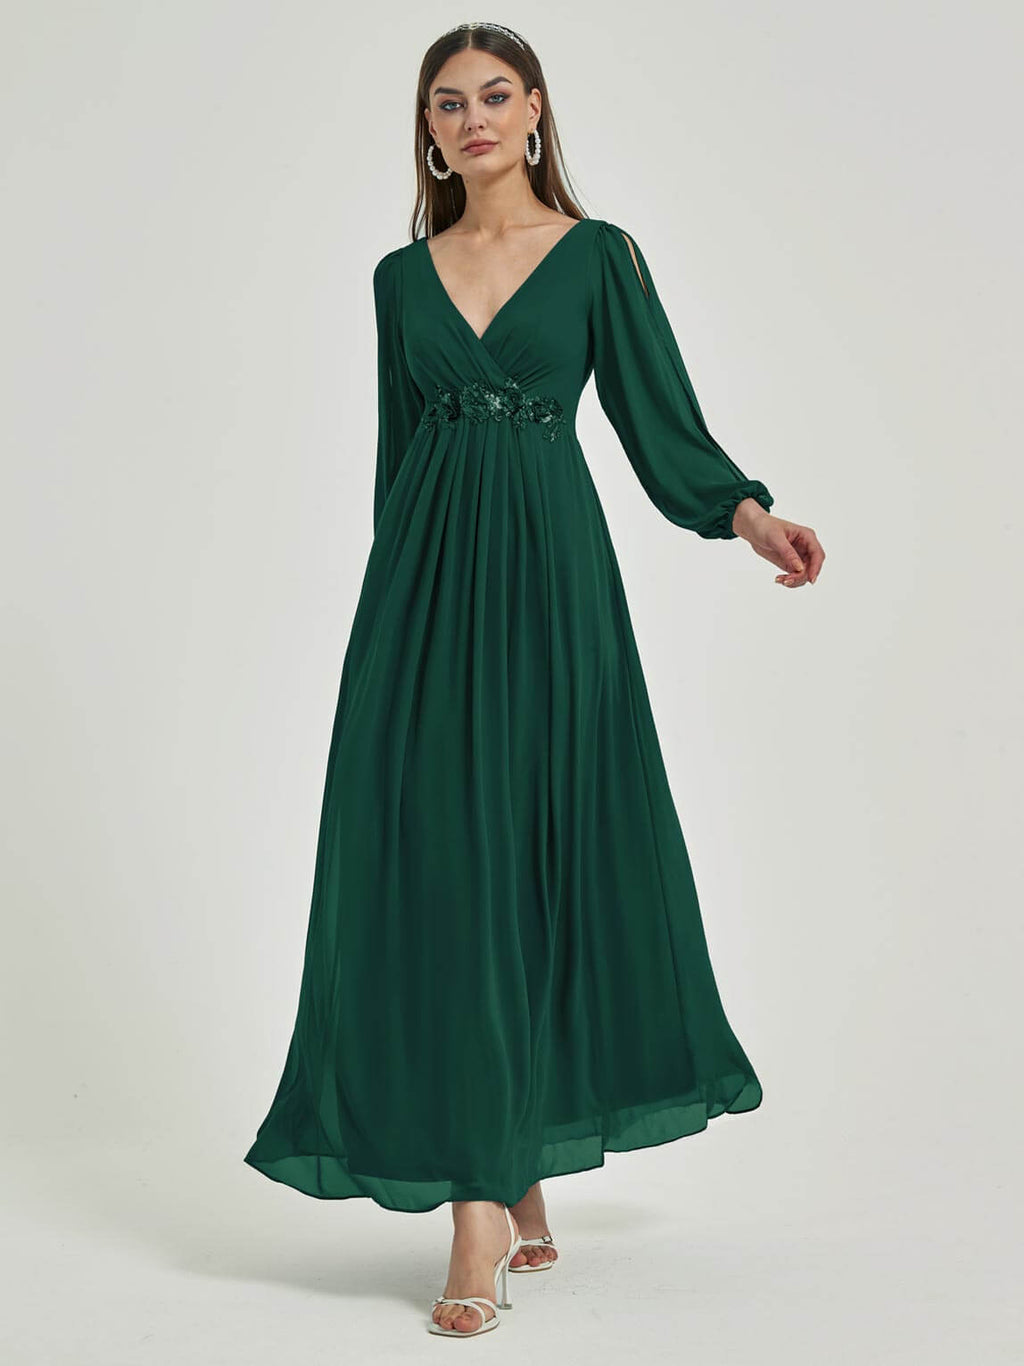 NZ Bridal Chiffon Emerald Green Flowy bridesmaid dresses 00461ep Liv a